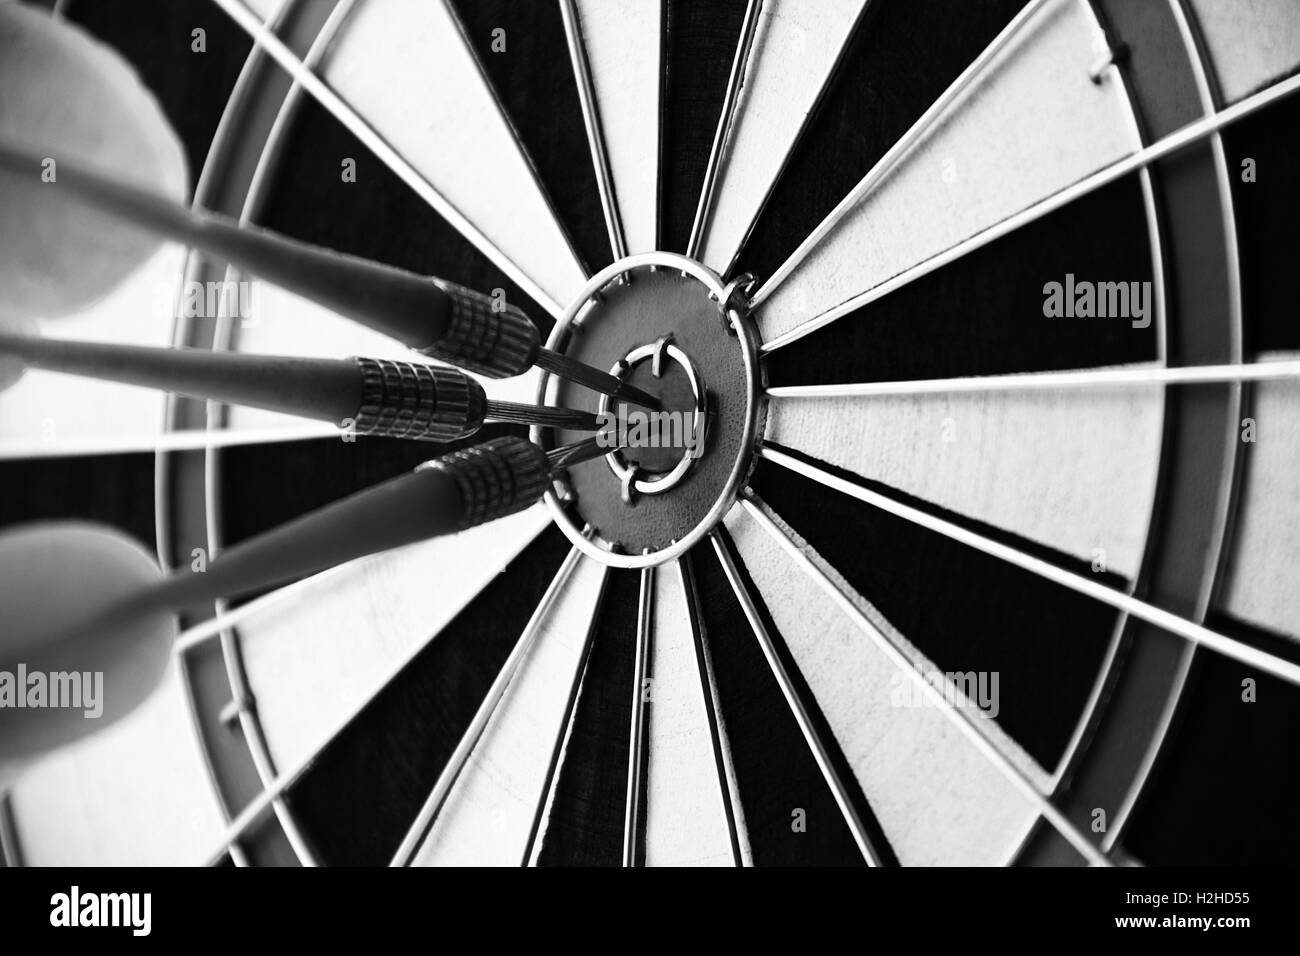 Darts bullseye target close up concept of success Stock Photo